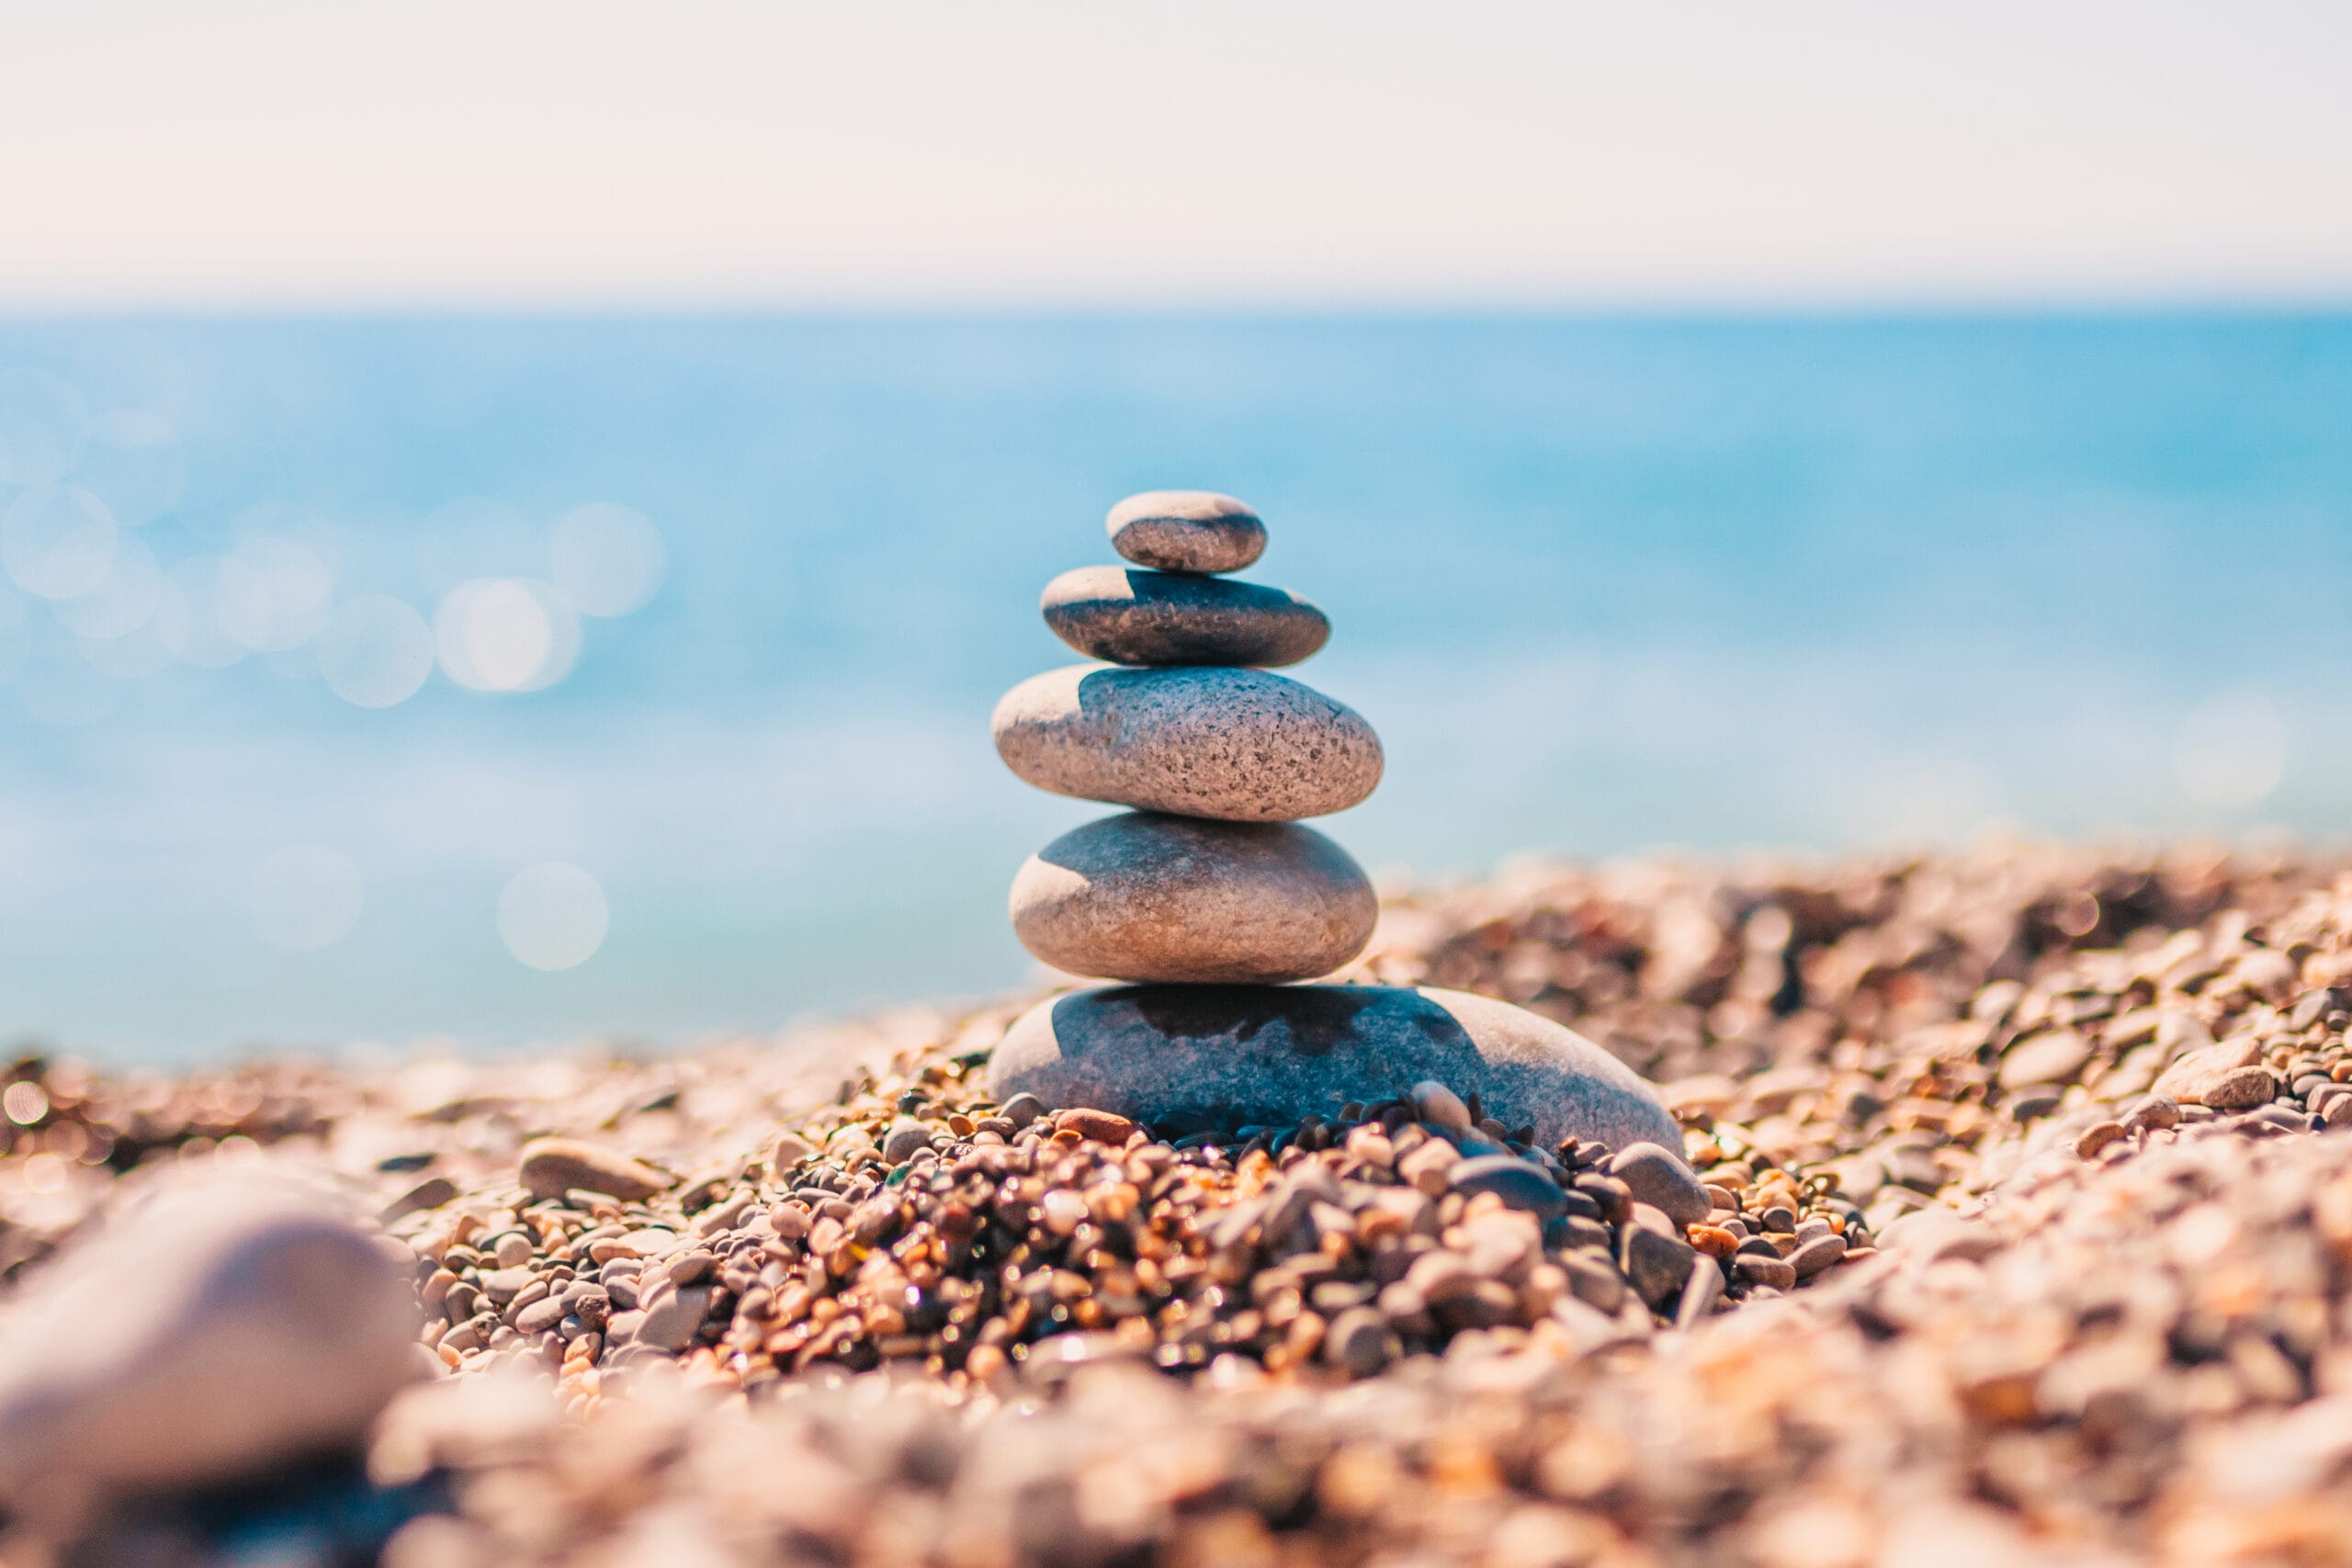 Stone pyramid on pebbles on beach - zen rock - balance and harmony